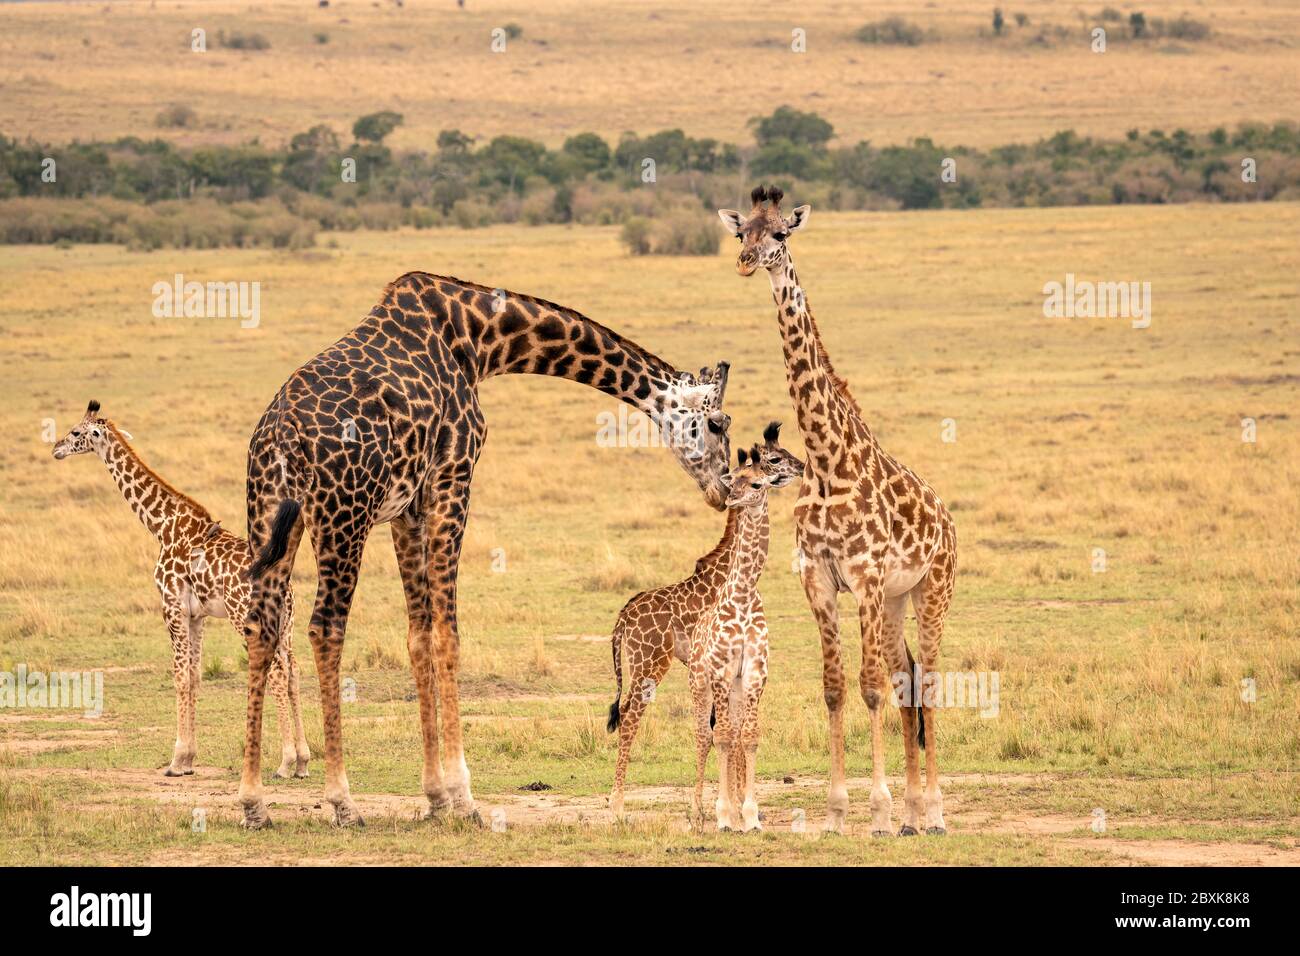 Eine Giraffenfamilie mit fünf Mitgliedern, darunter junge Kälber, die auf der Savanne stehen. Eine Mutter Giraffe beugt sich, um ihr Kalb zu pflegen. Stockfoto